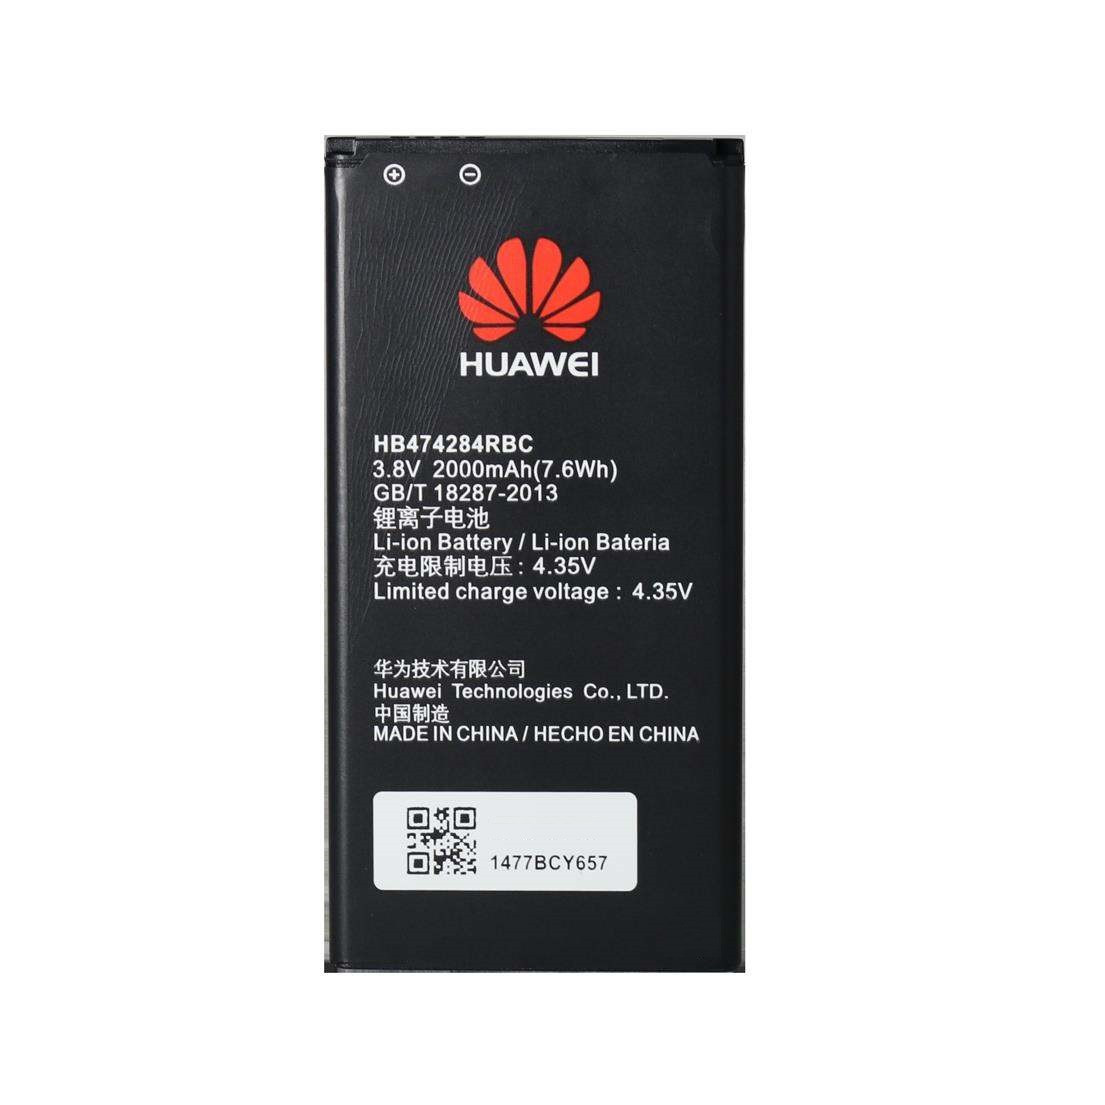 Акумулятор для Huawei HB474284RBC Y550 Y541 Y560 Y625 Y635 Honor 3C Lite G615 U9508 G620s C8816,